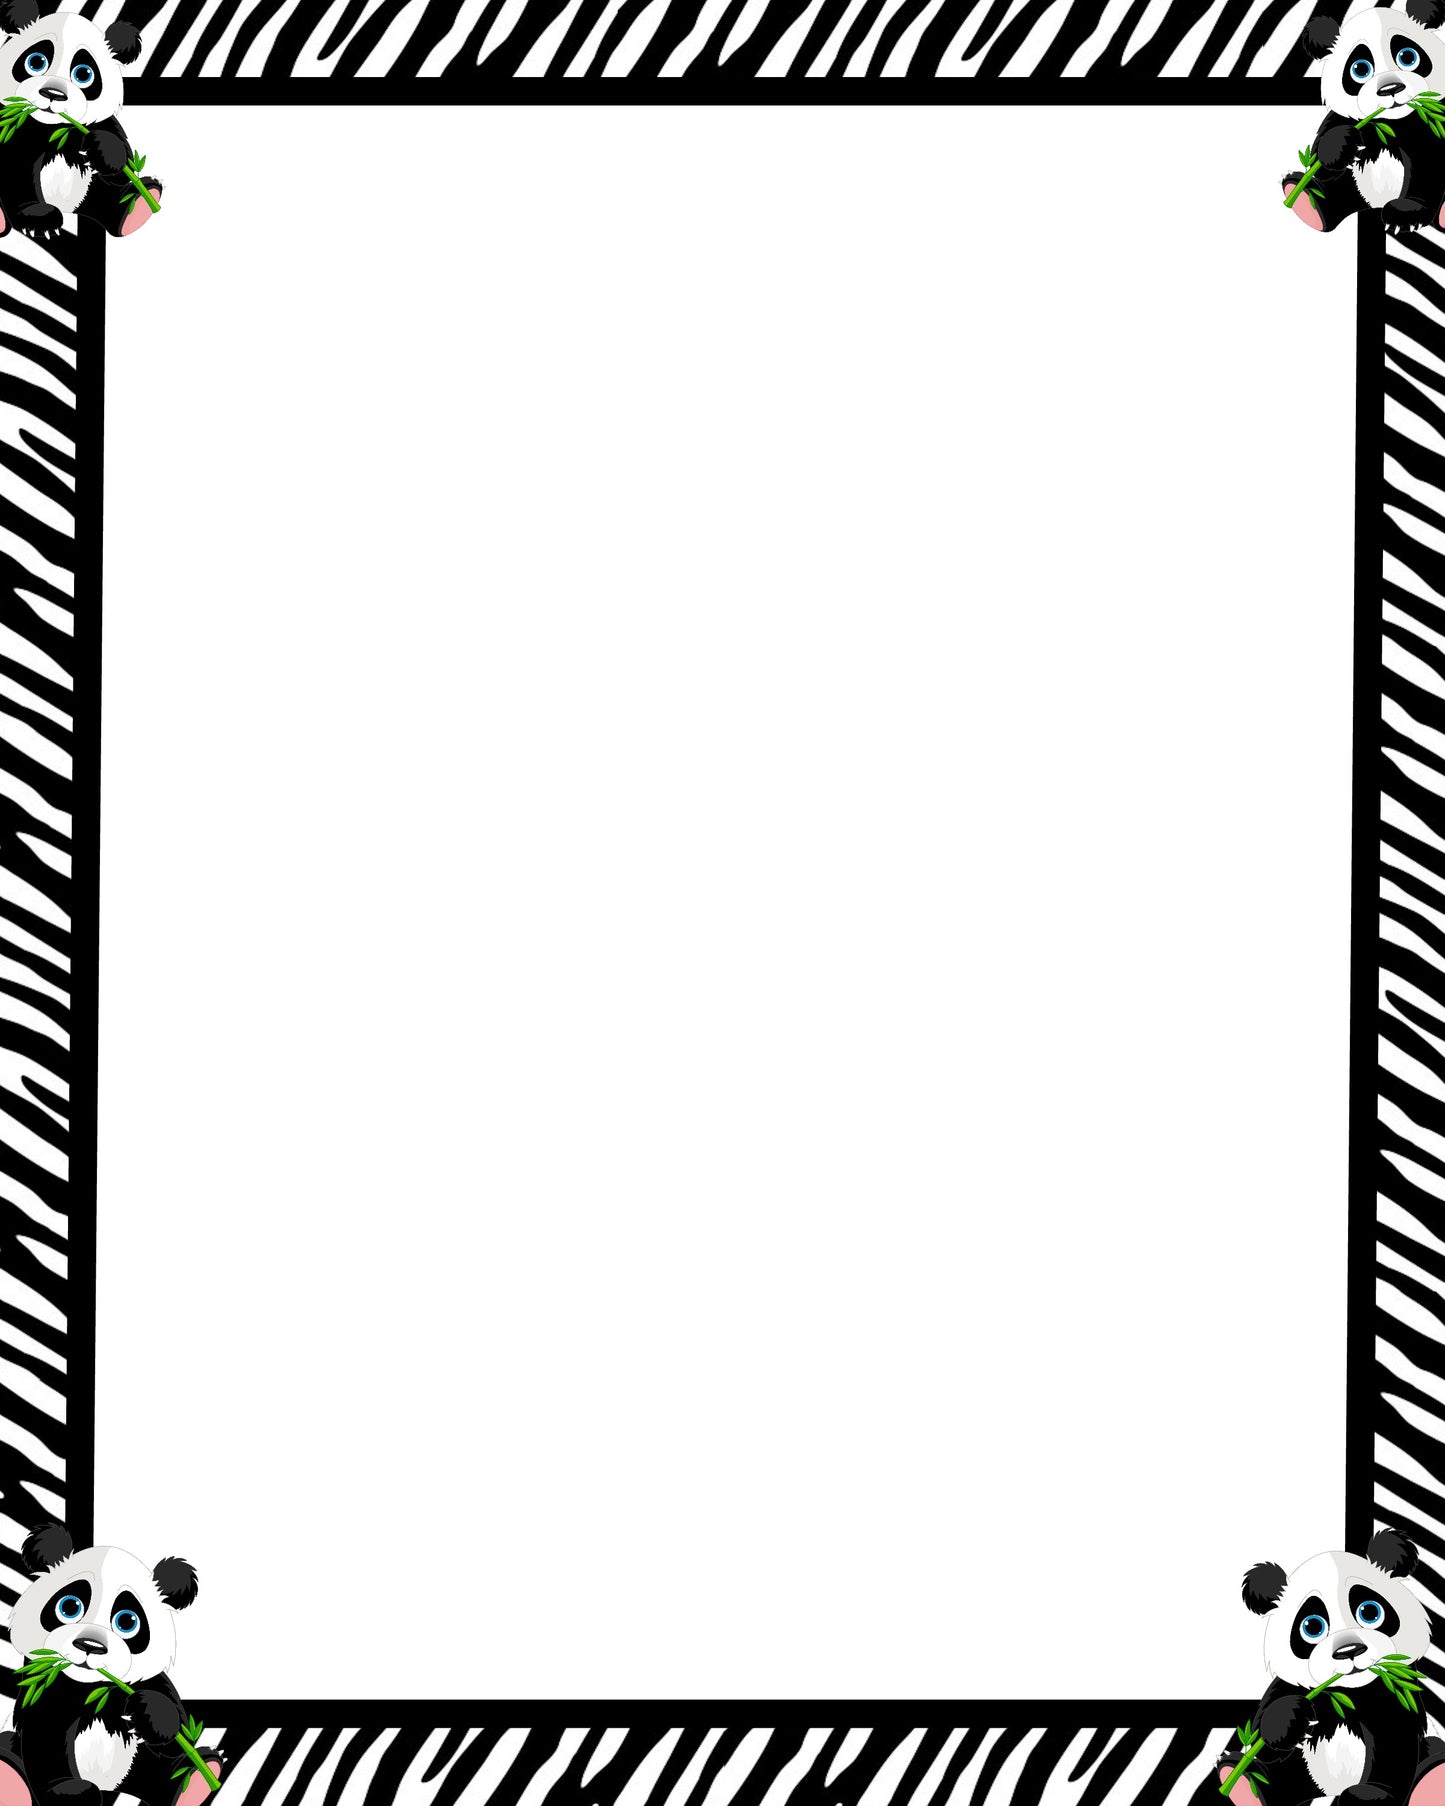 Panda Border 8x10 Blank Page - Frame - Print